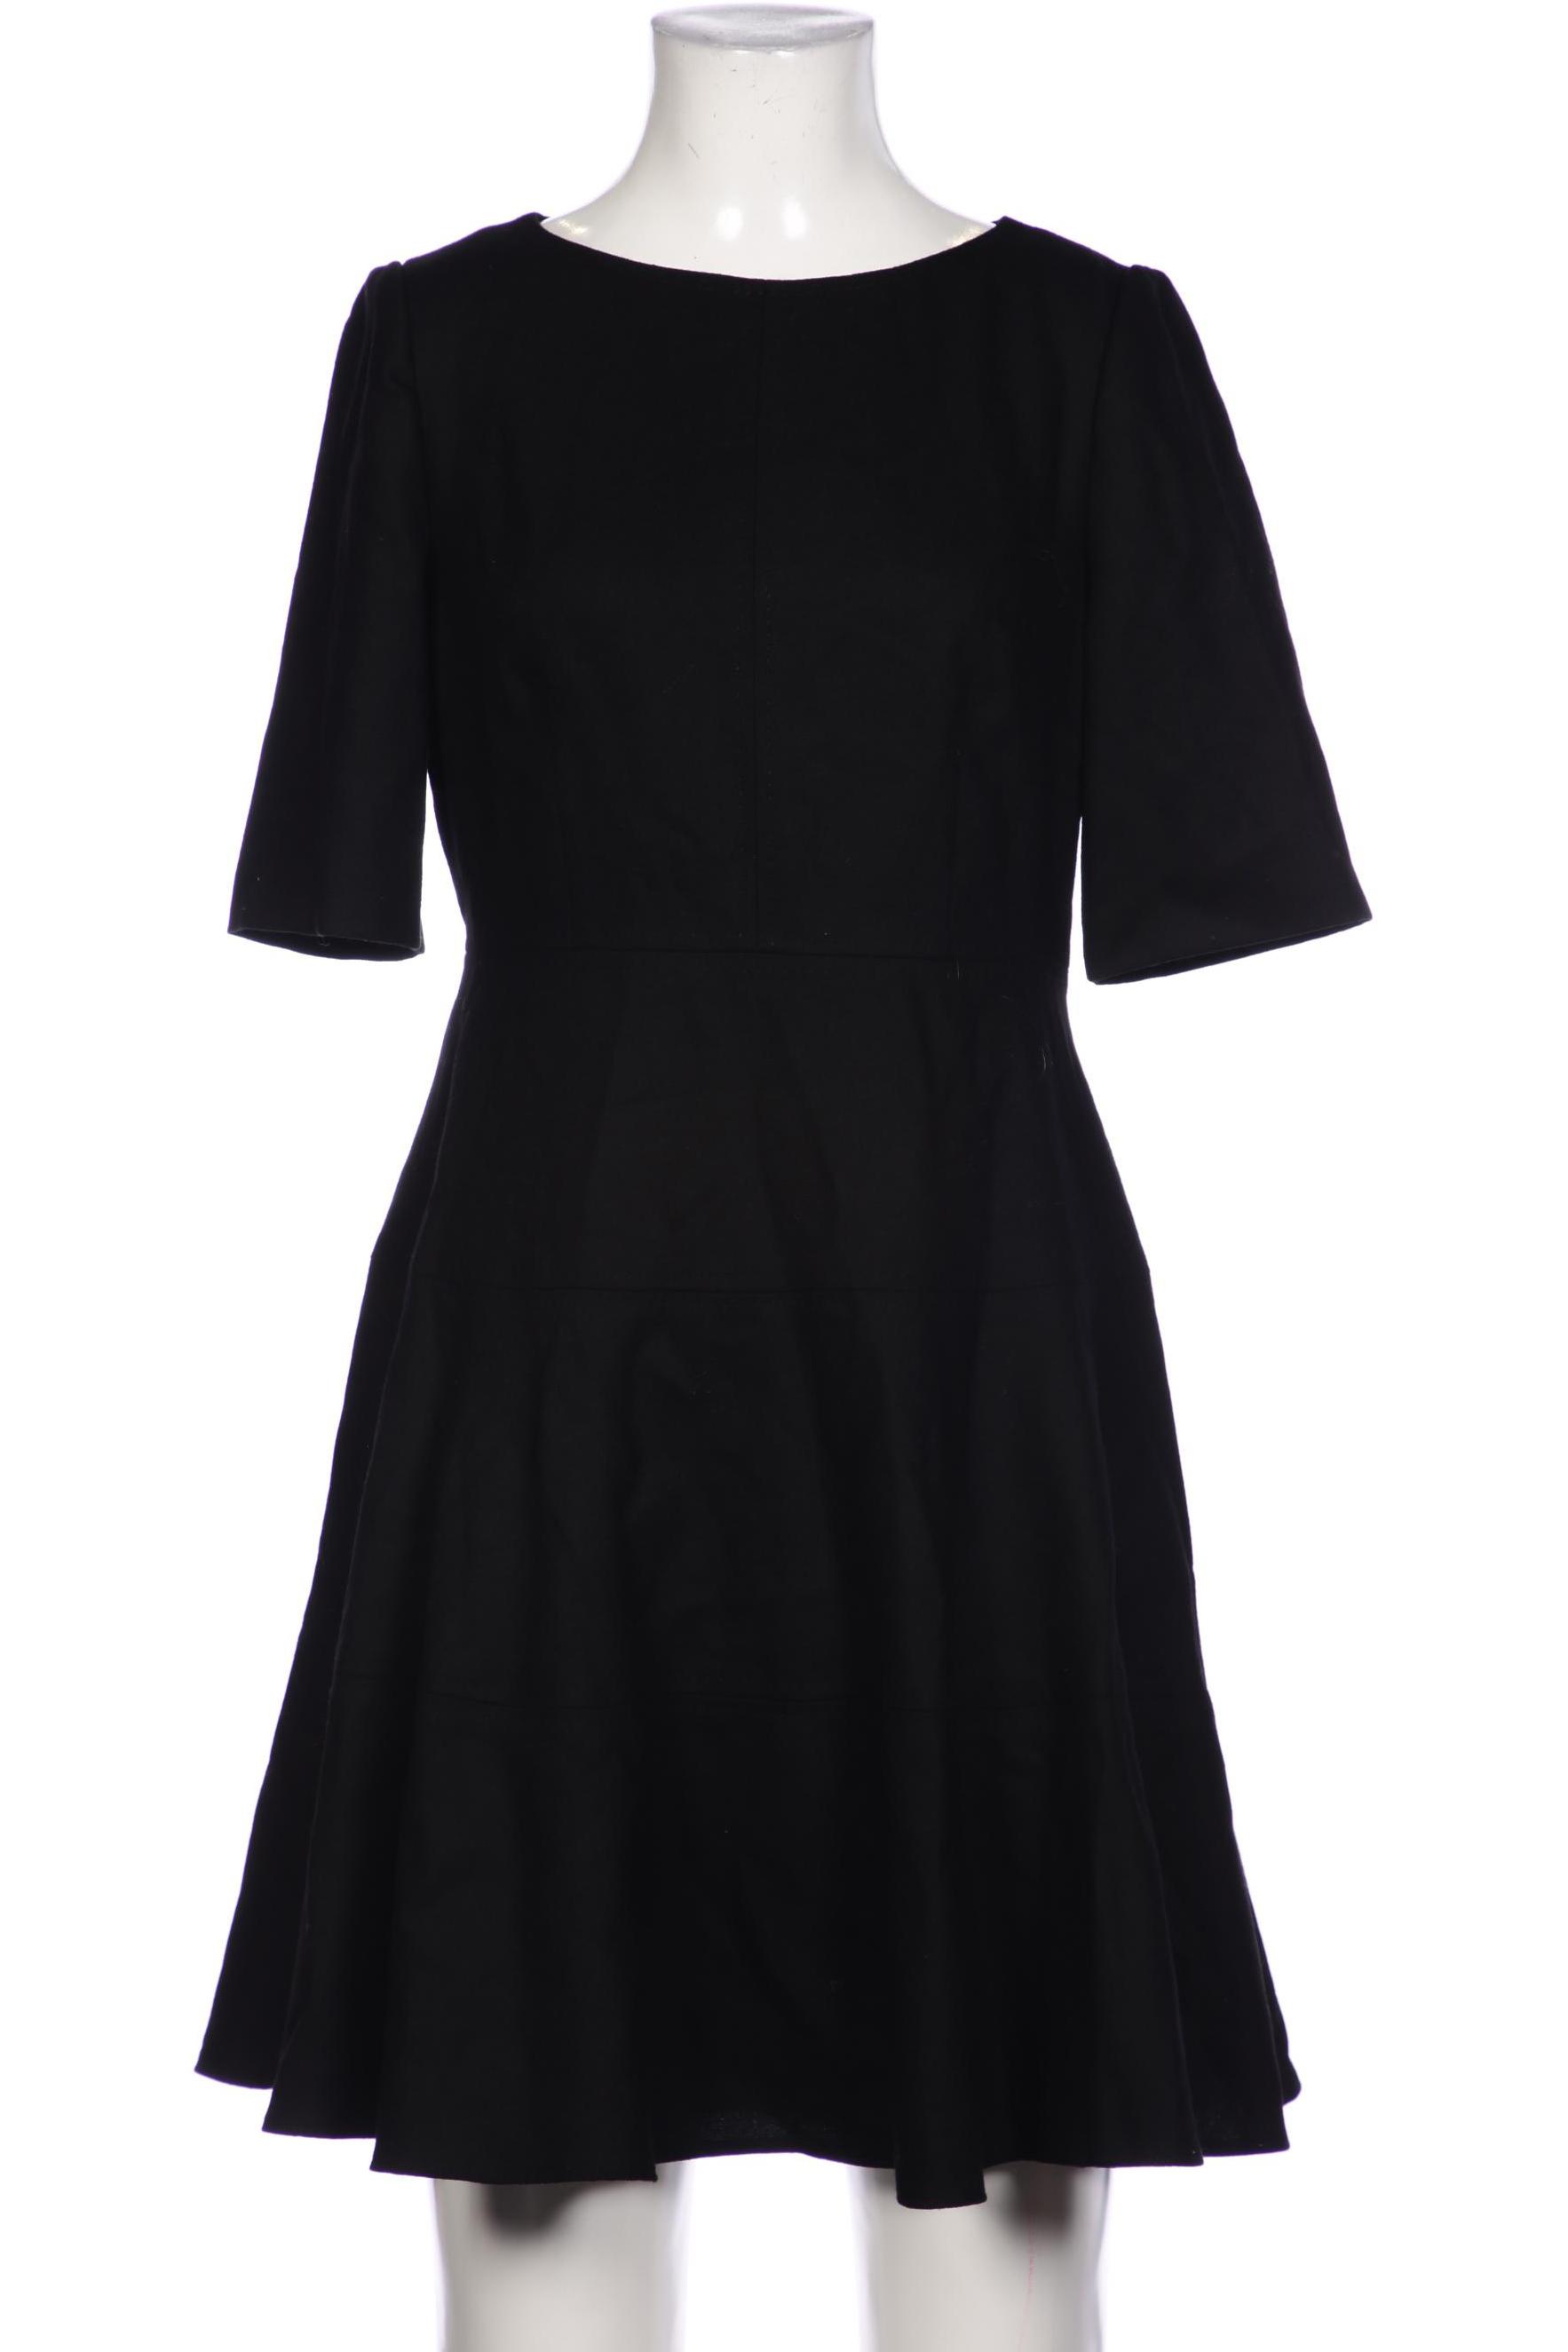 Boden Damen Kleid, schwarz, Gr. 36 von Boden